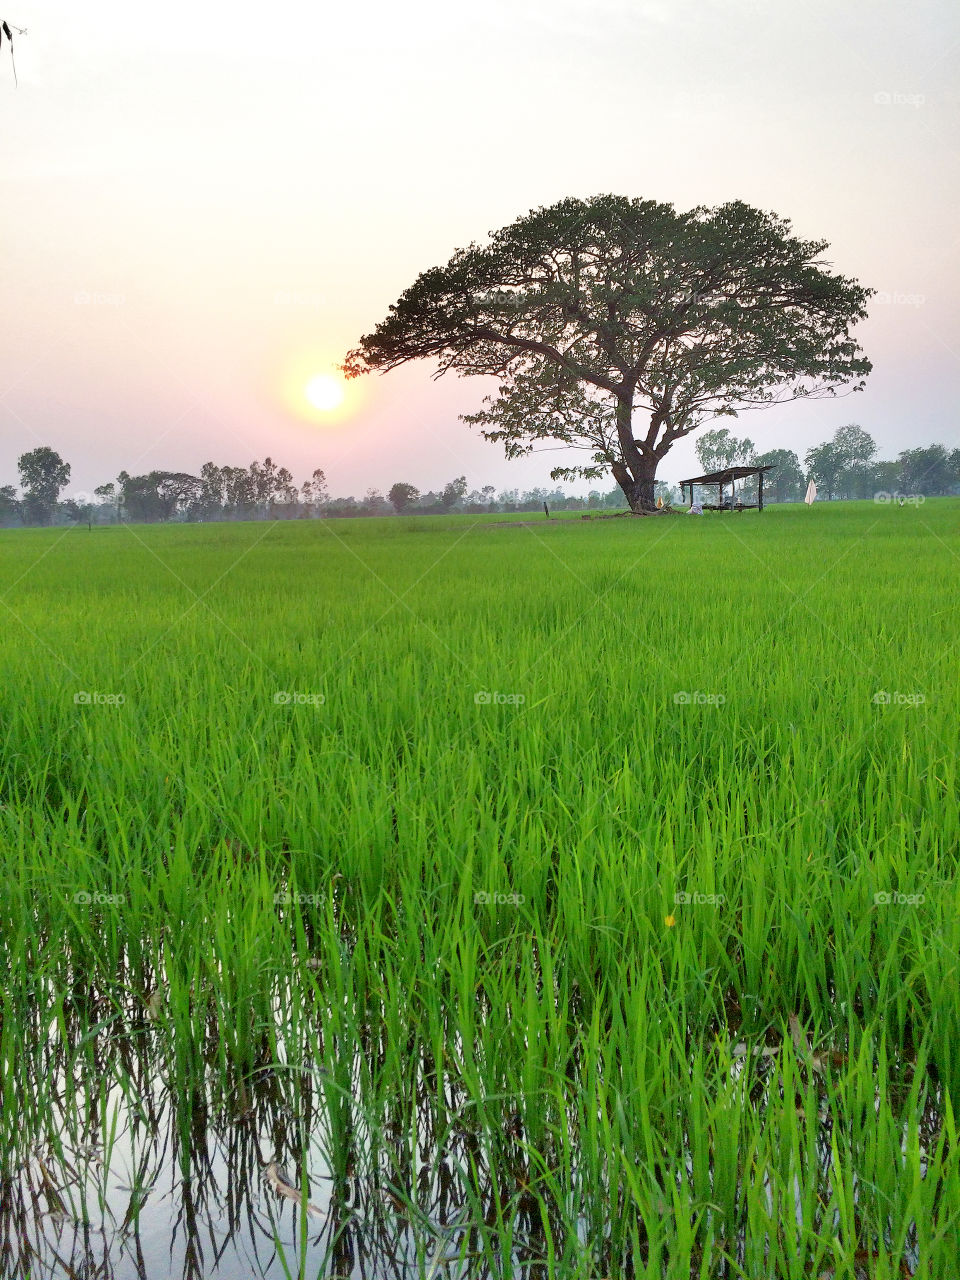 Tree, rice field & sunset